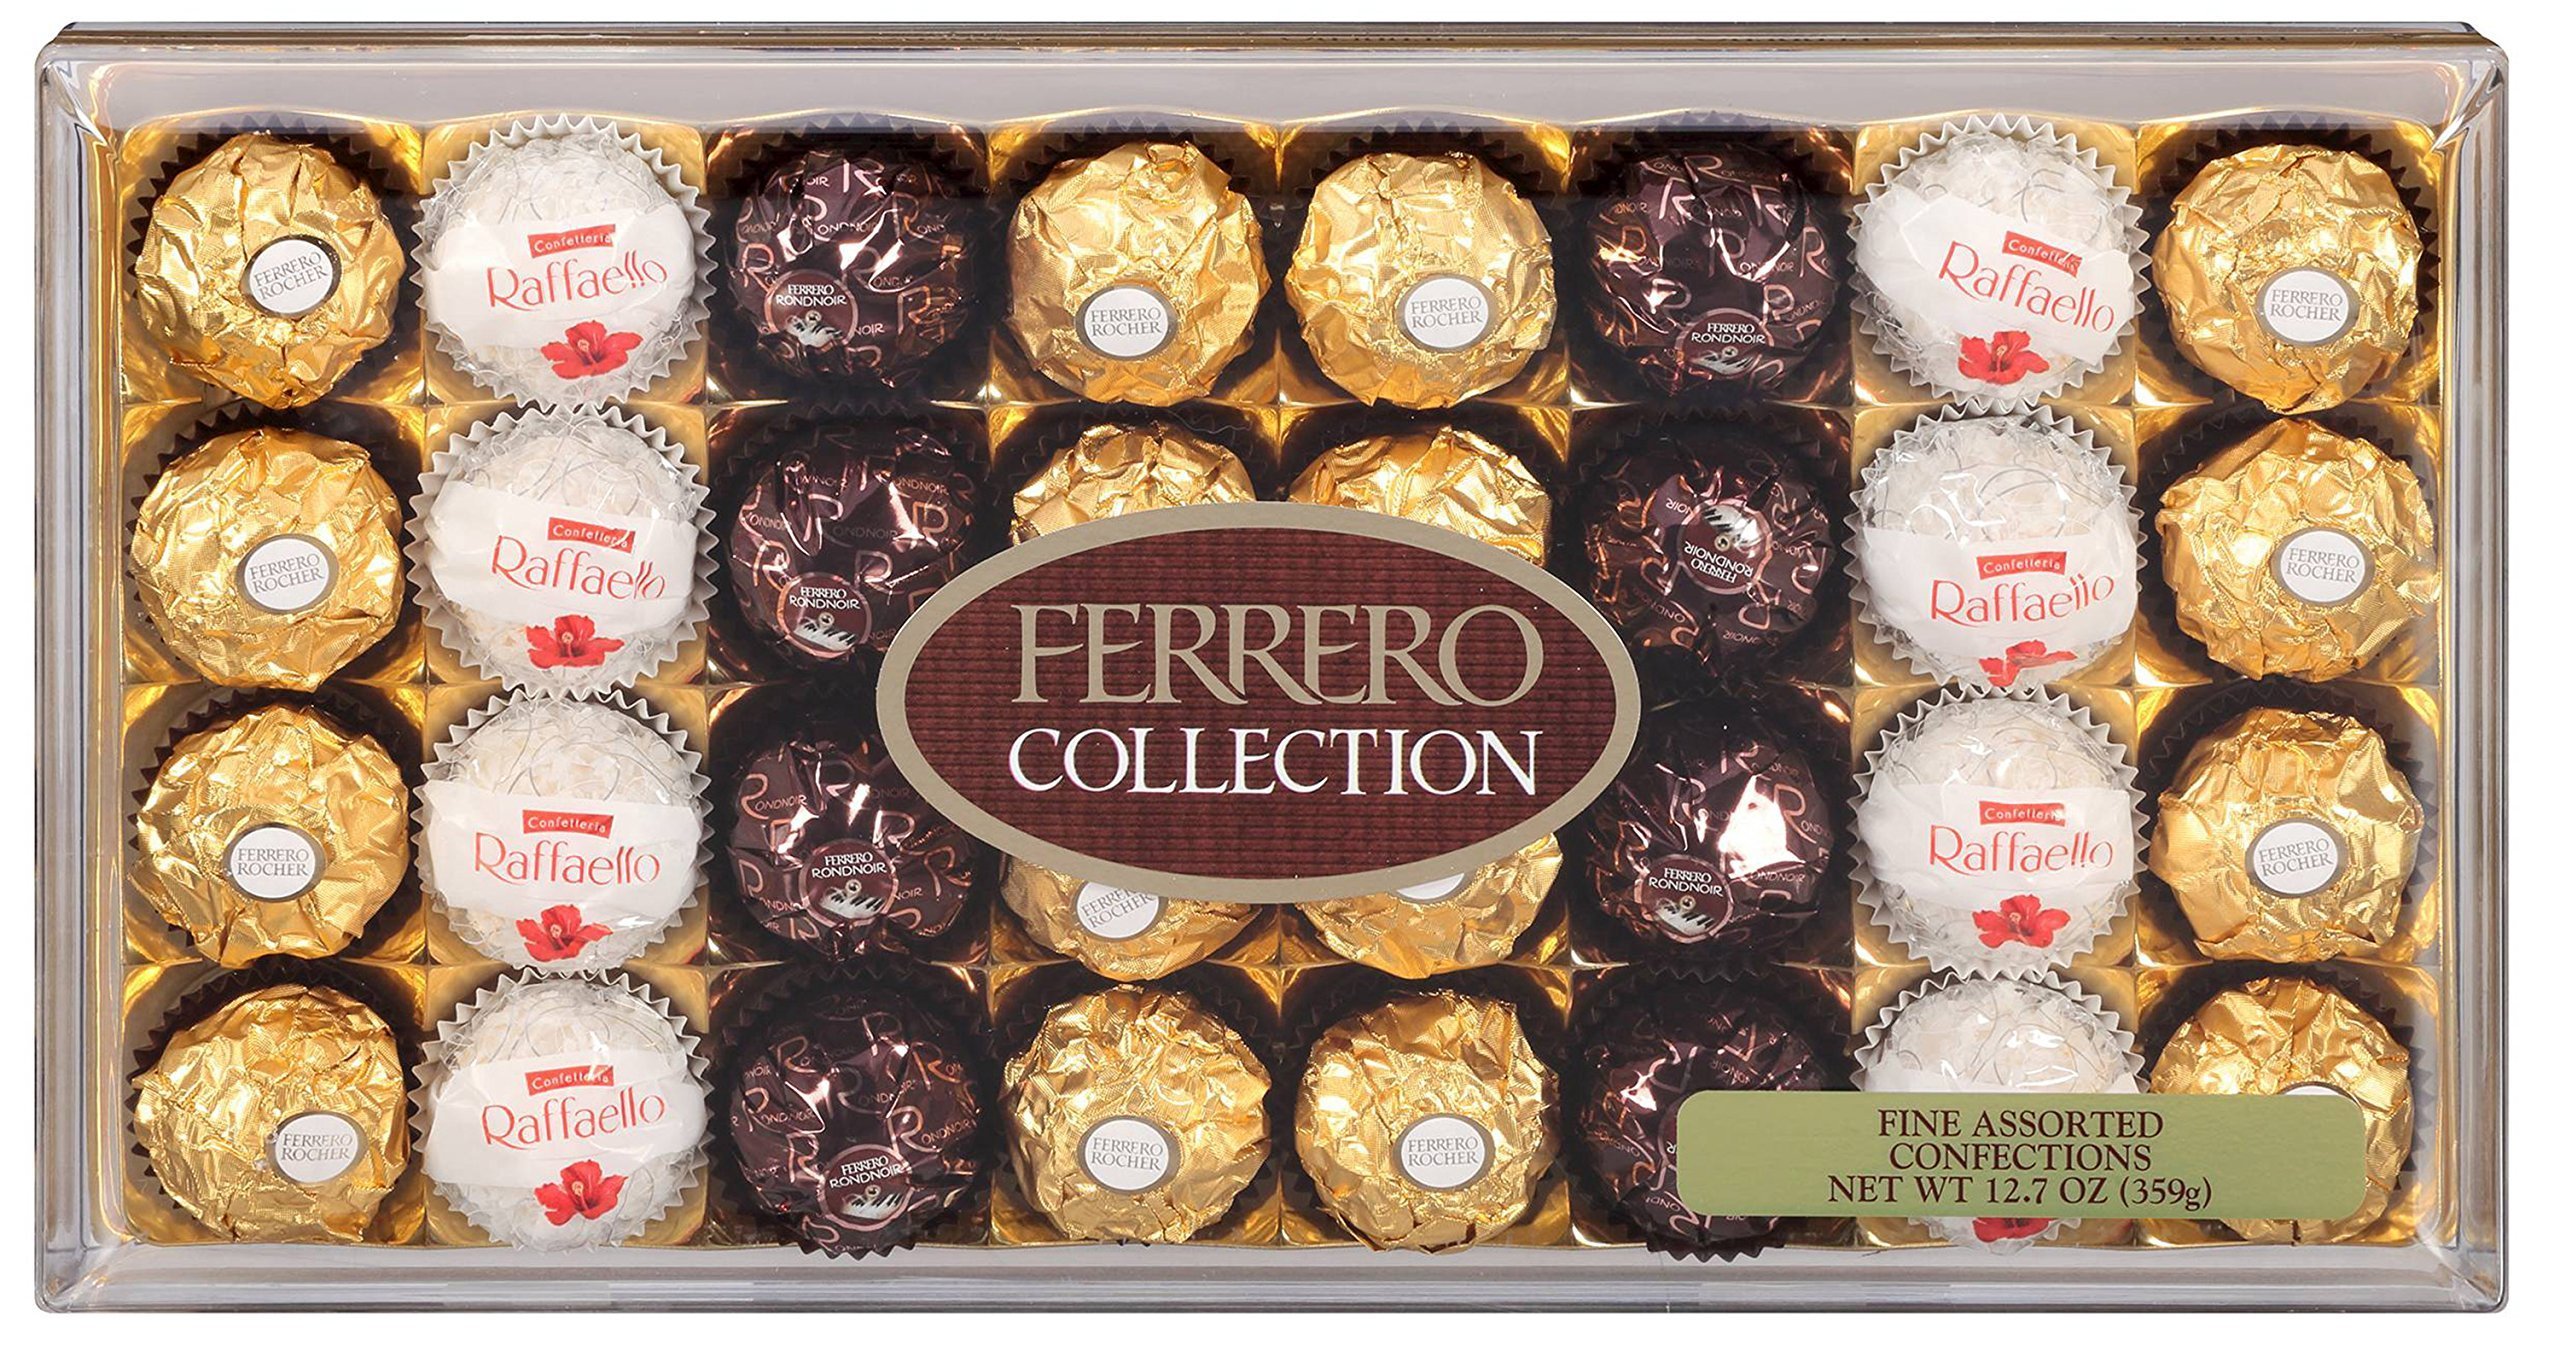 Т т collection. Коллекция Ферреро т32. Ферреро Роше коллекшн. Ferrero Rocher collection, 359.2. Ферреро коллекция 359.2г.